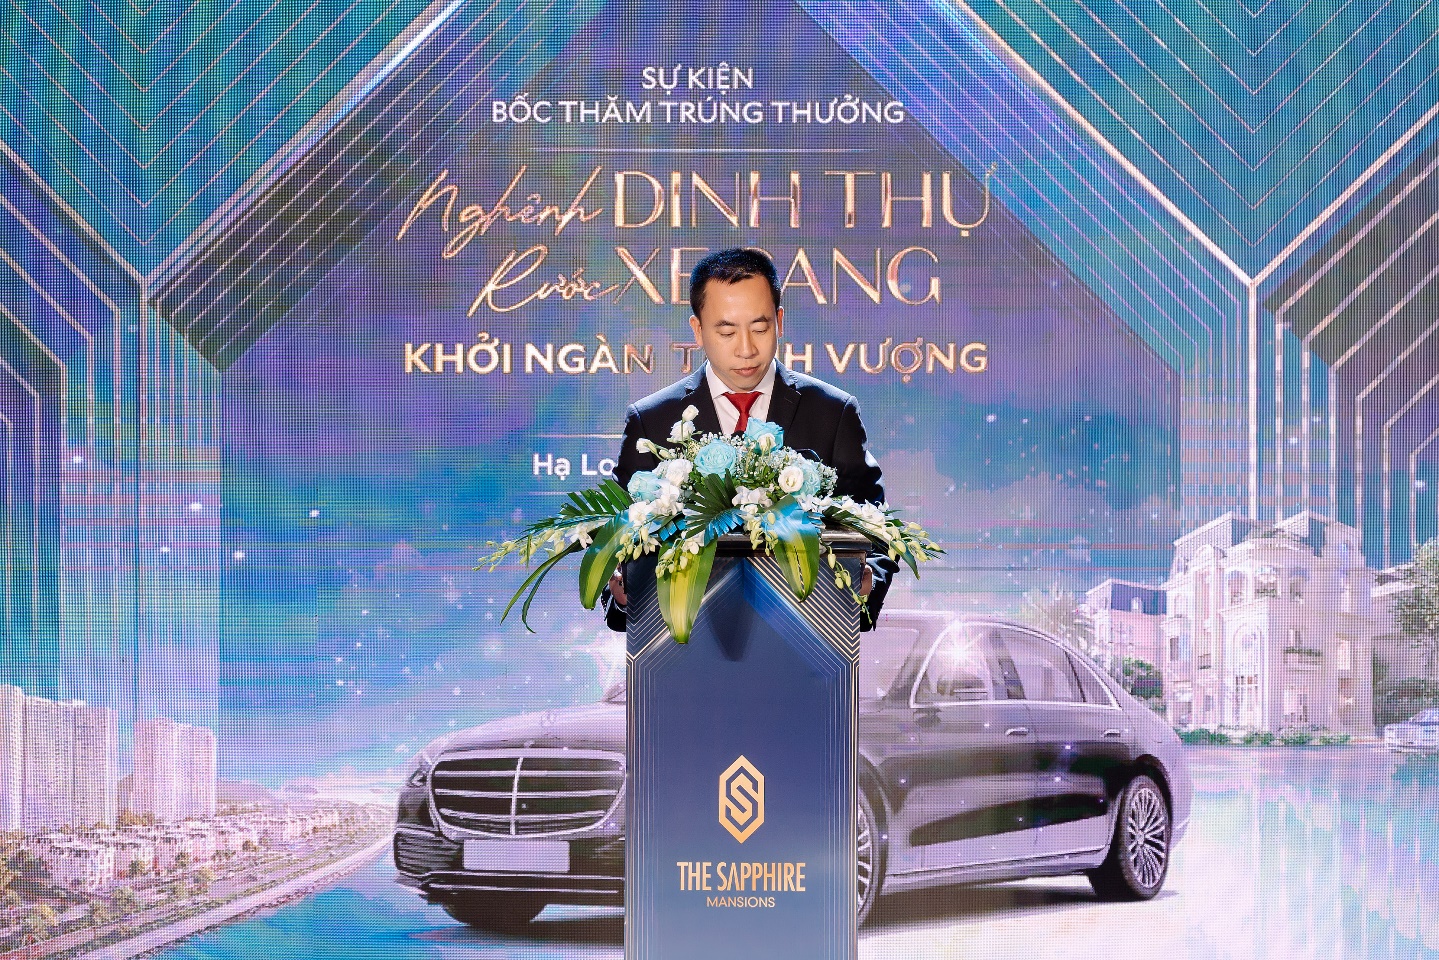 Ông Nguyễn Anh Vũ – Phó Tổng Giám đốc Công ty TNHH Đầu tư Bất động sản DOJILAND phát biểu tại buổi lễ.